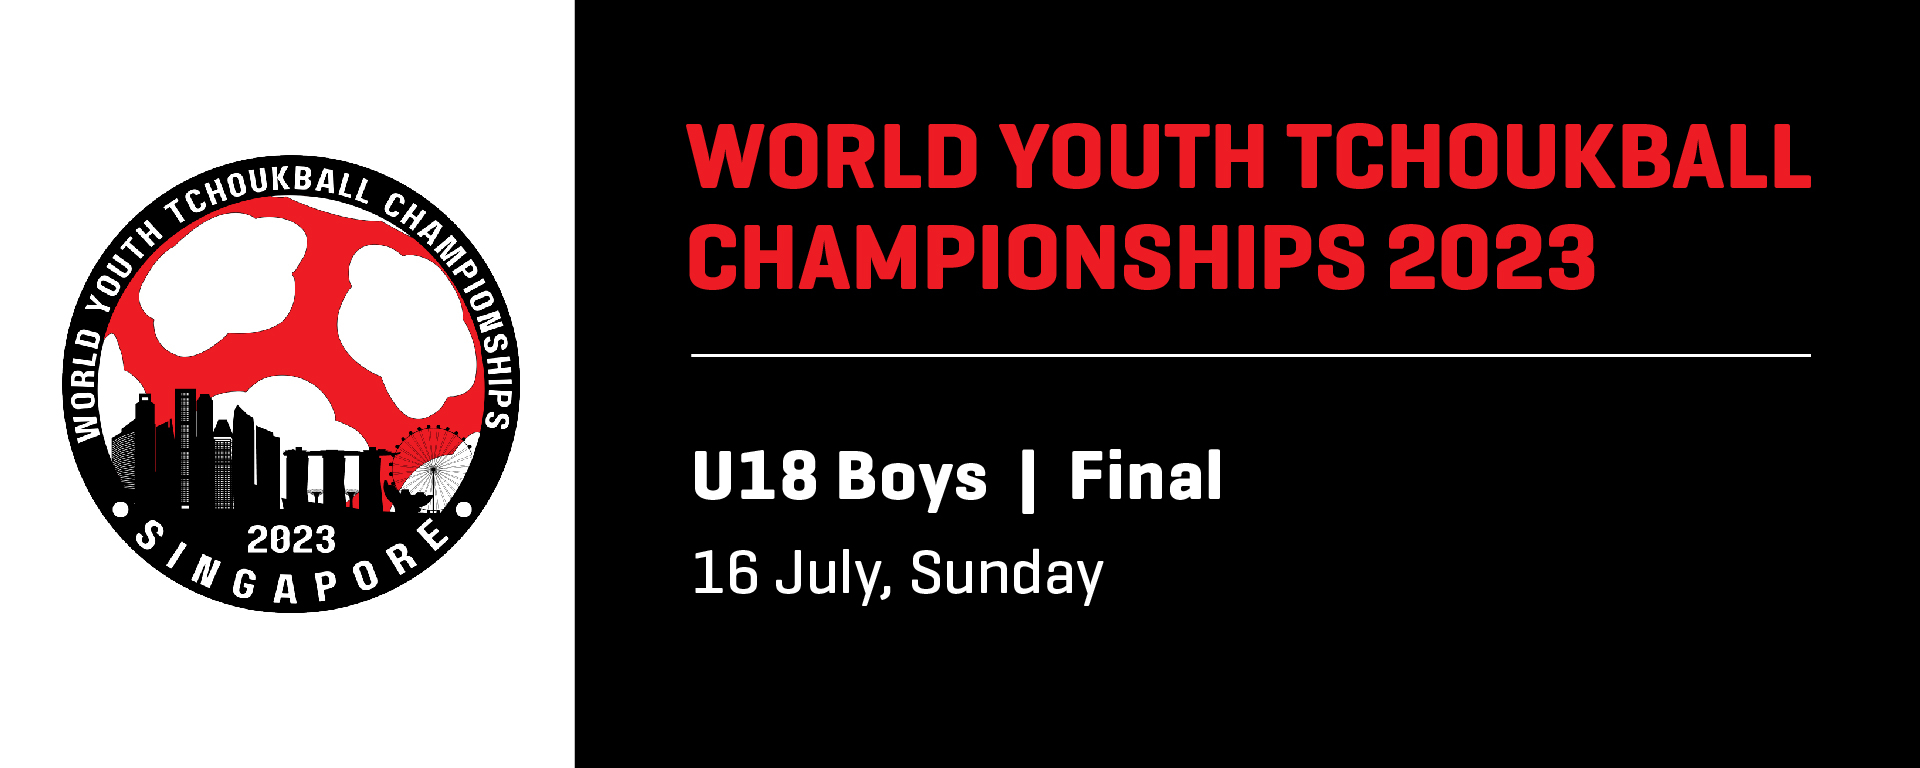 World Youth Tchoukball Championships 2023 | U18 Boys Final | Singapore vs Chinese Taipei